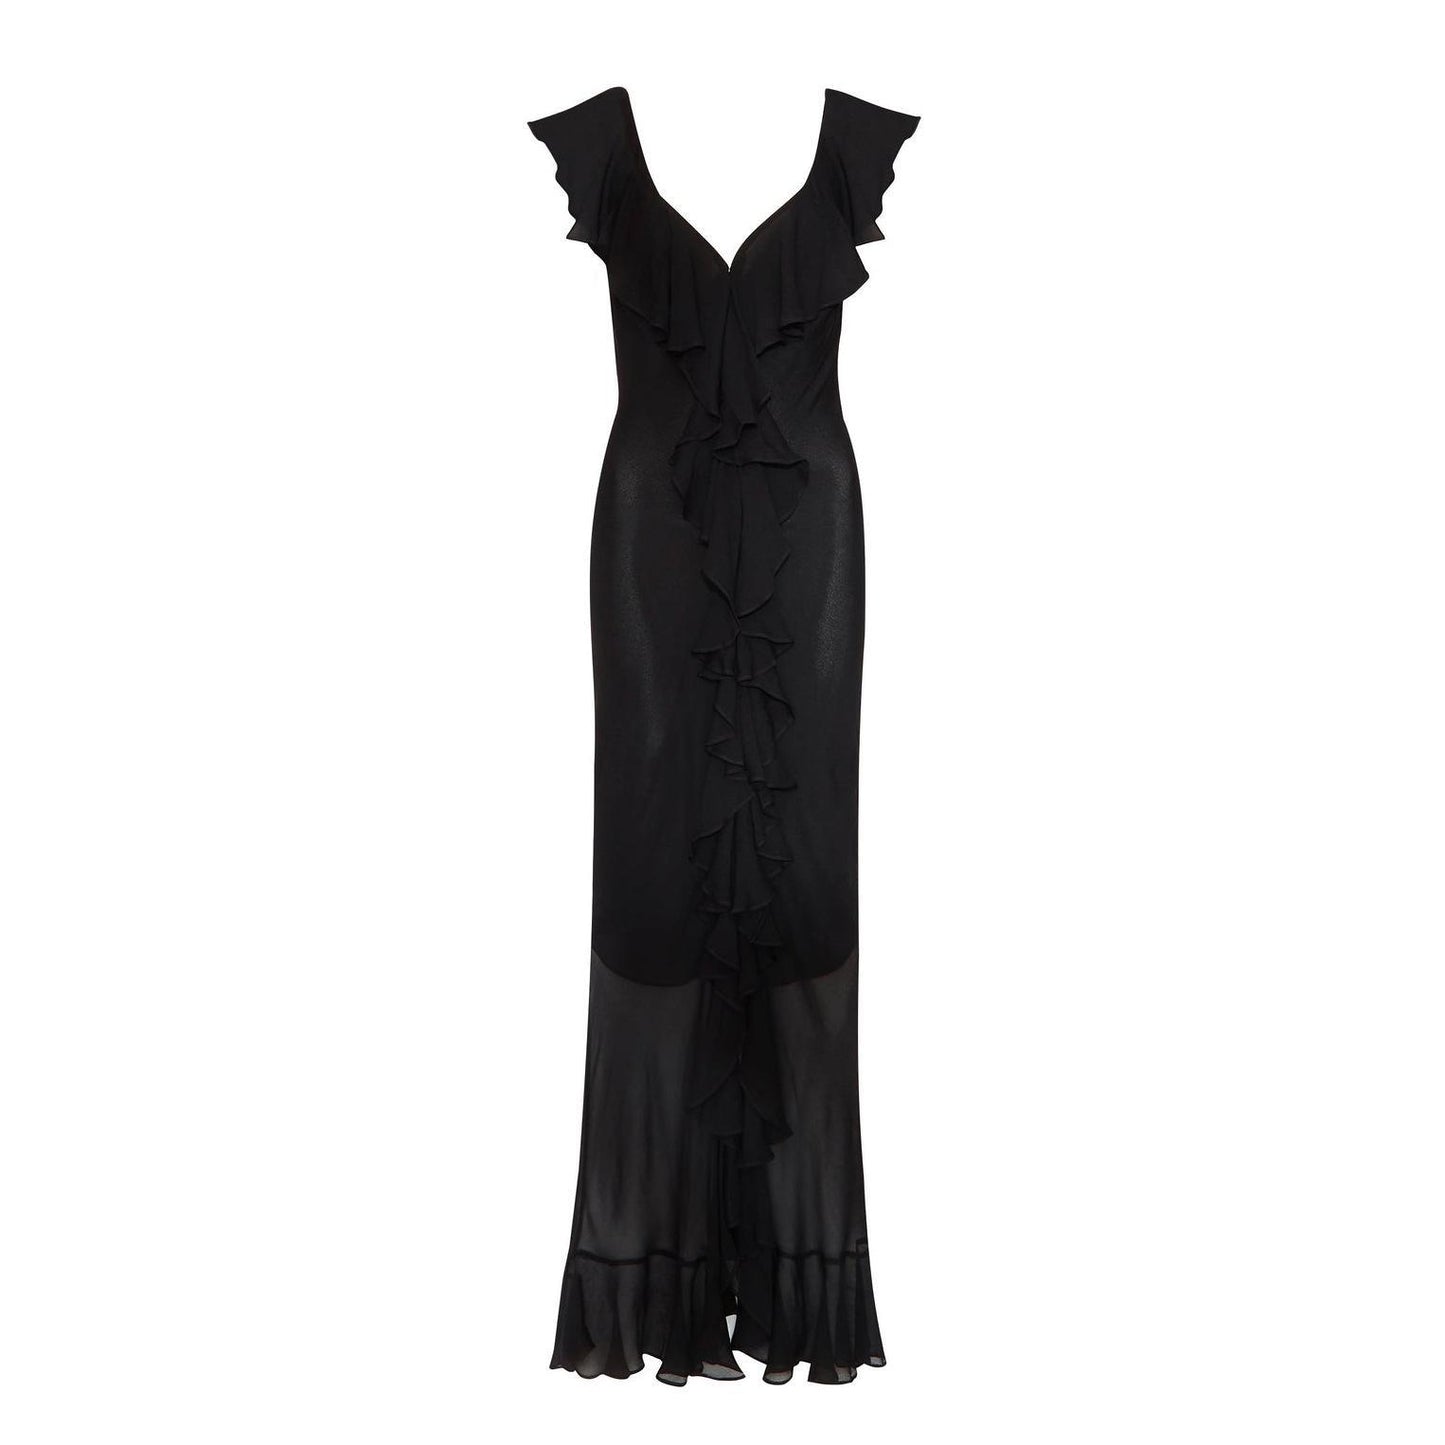 Szyfonowa sukienka z dekoltem w kształcie litery V, dopasowana, z rozcięciem, przezroczysta, nieregularna, asymetryczna, z marszczonymi rozcięciami